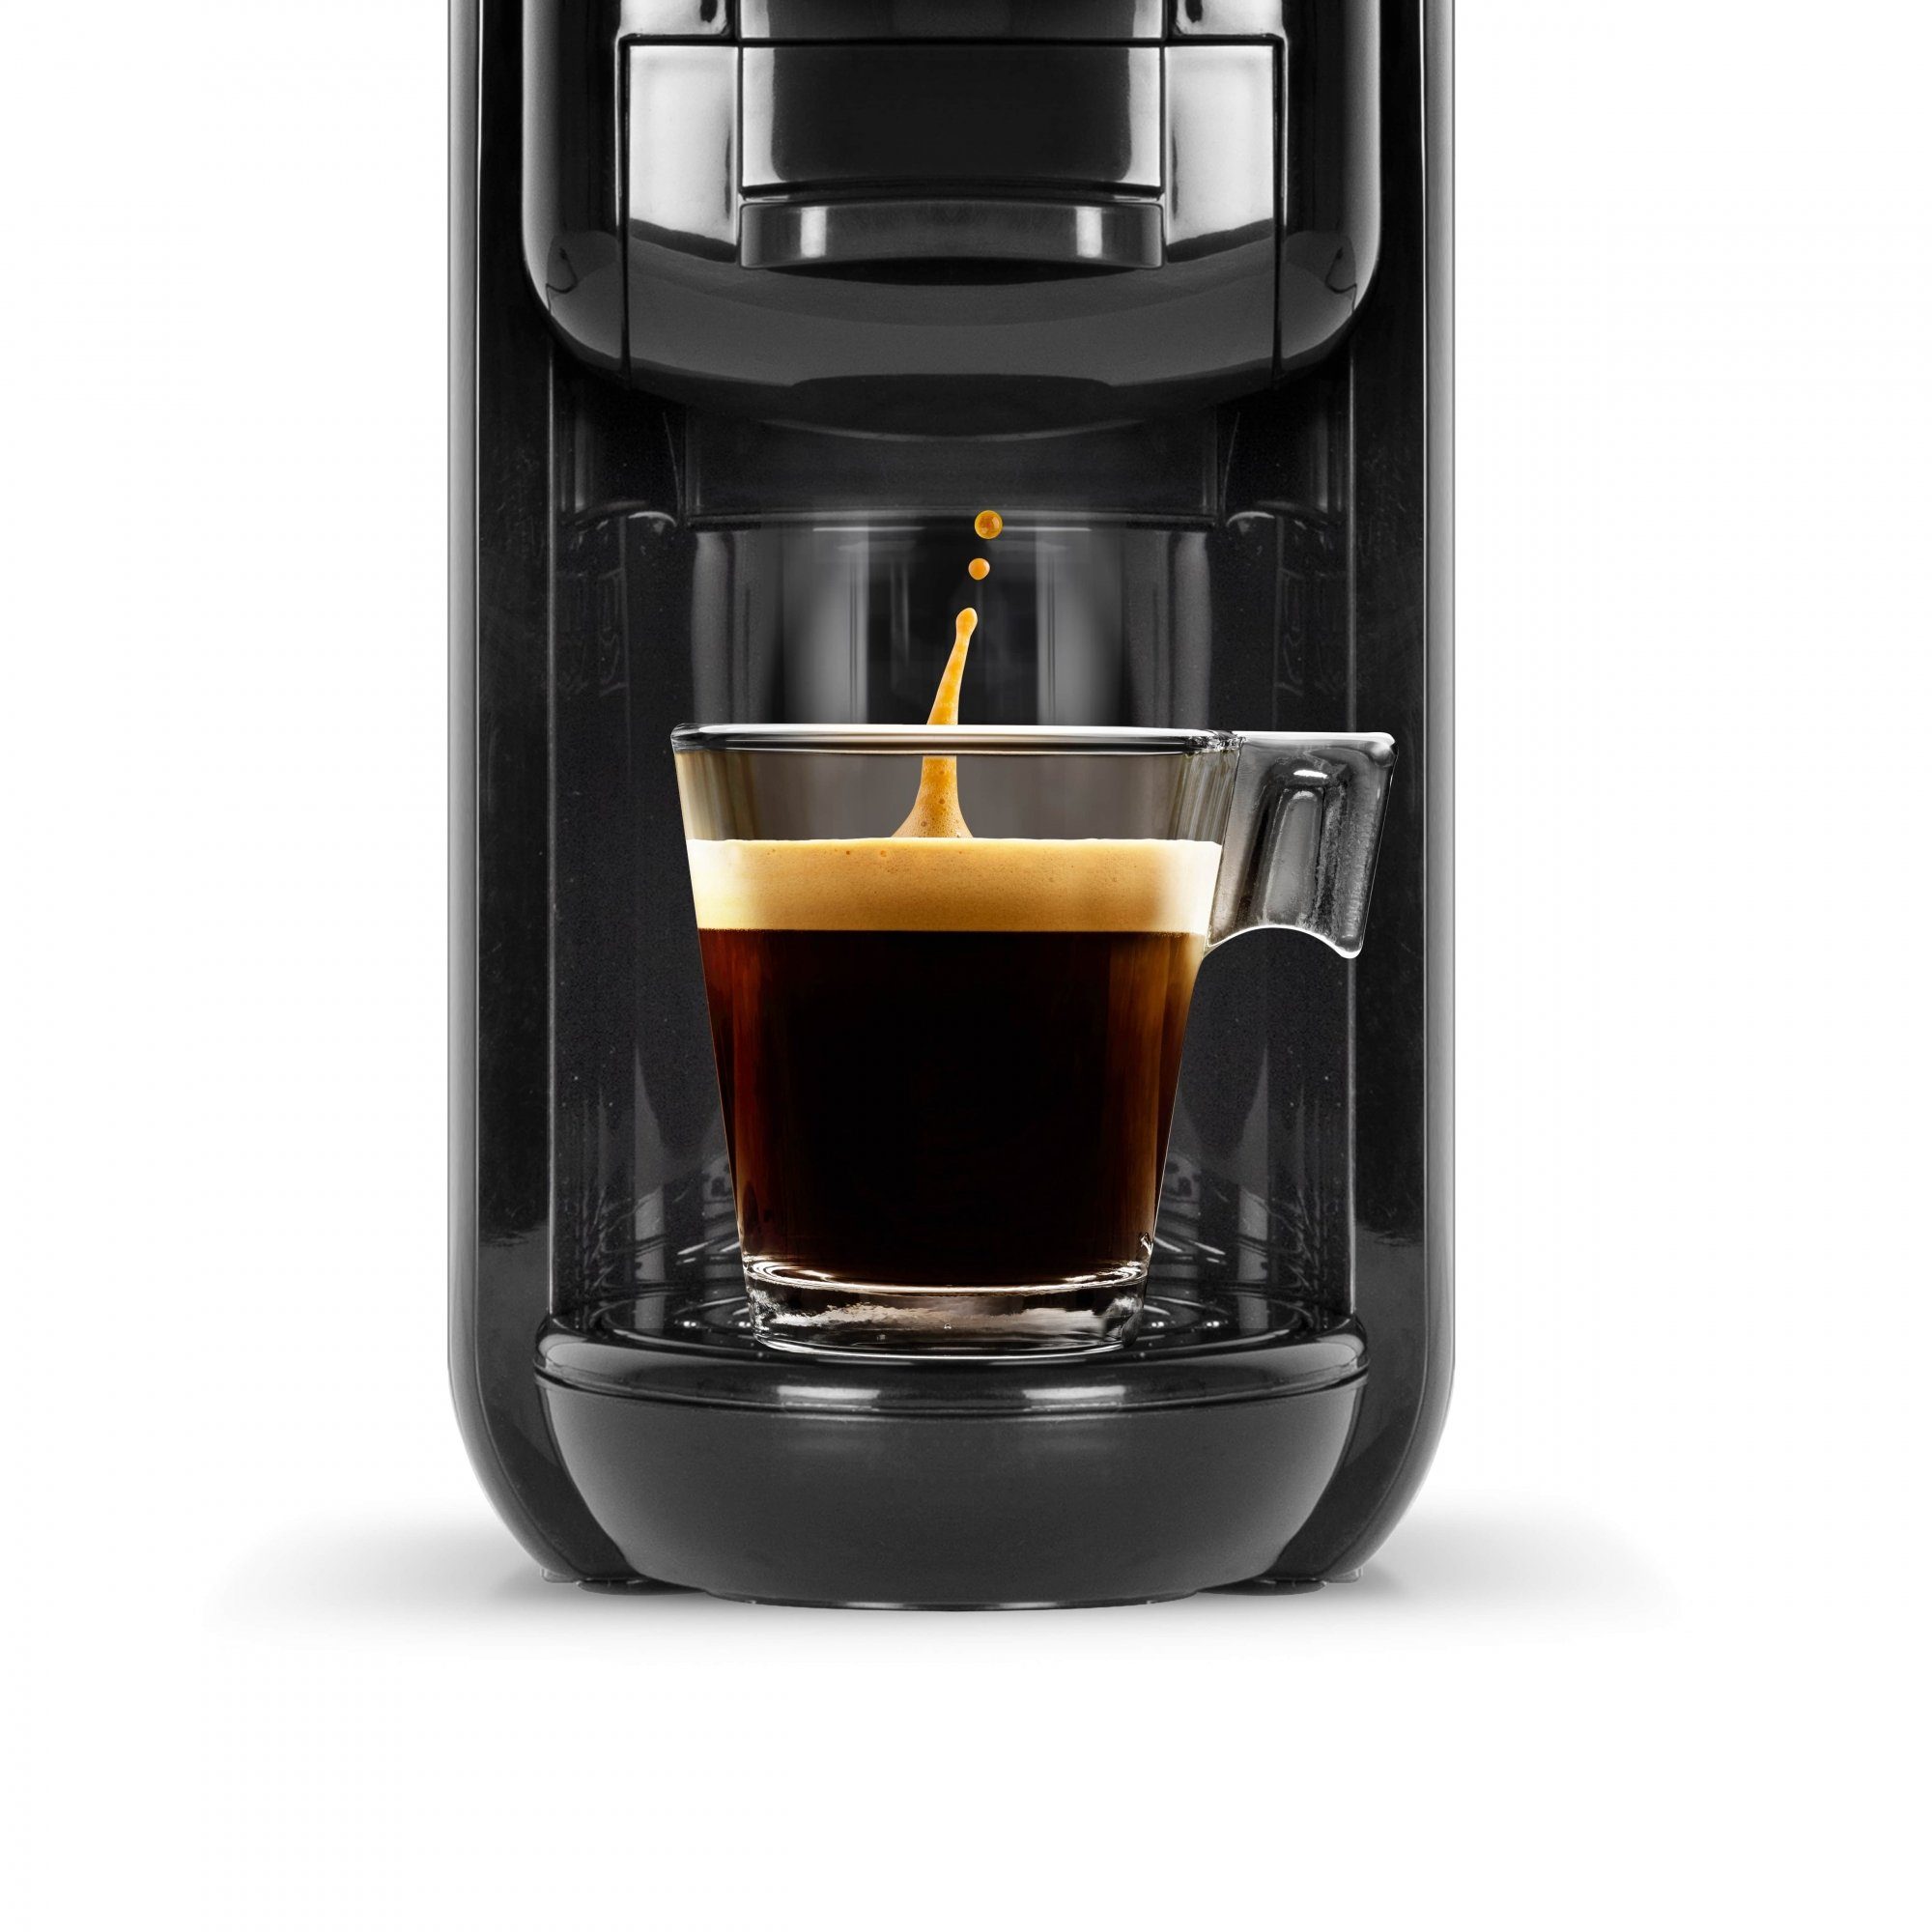 & Kaffee Bar Kaffeepadmaschine Dolce-Gusto schwarz SCHNEIDER Nespresso Druck, Pads gemahlenen 19 für Espresso,